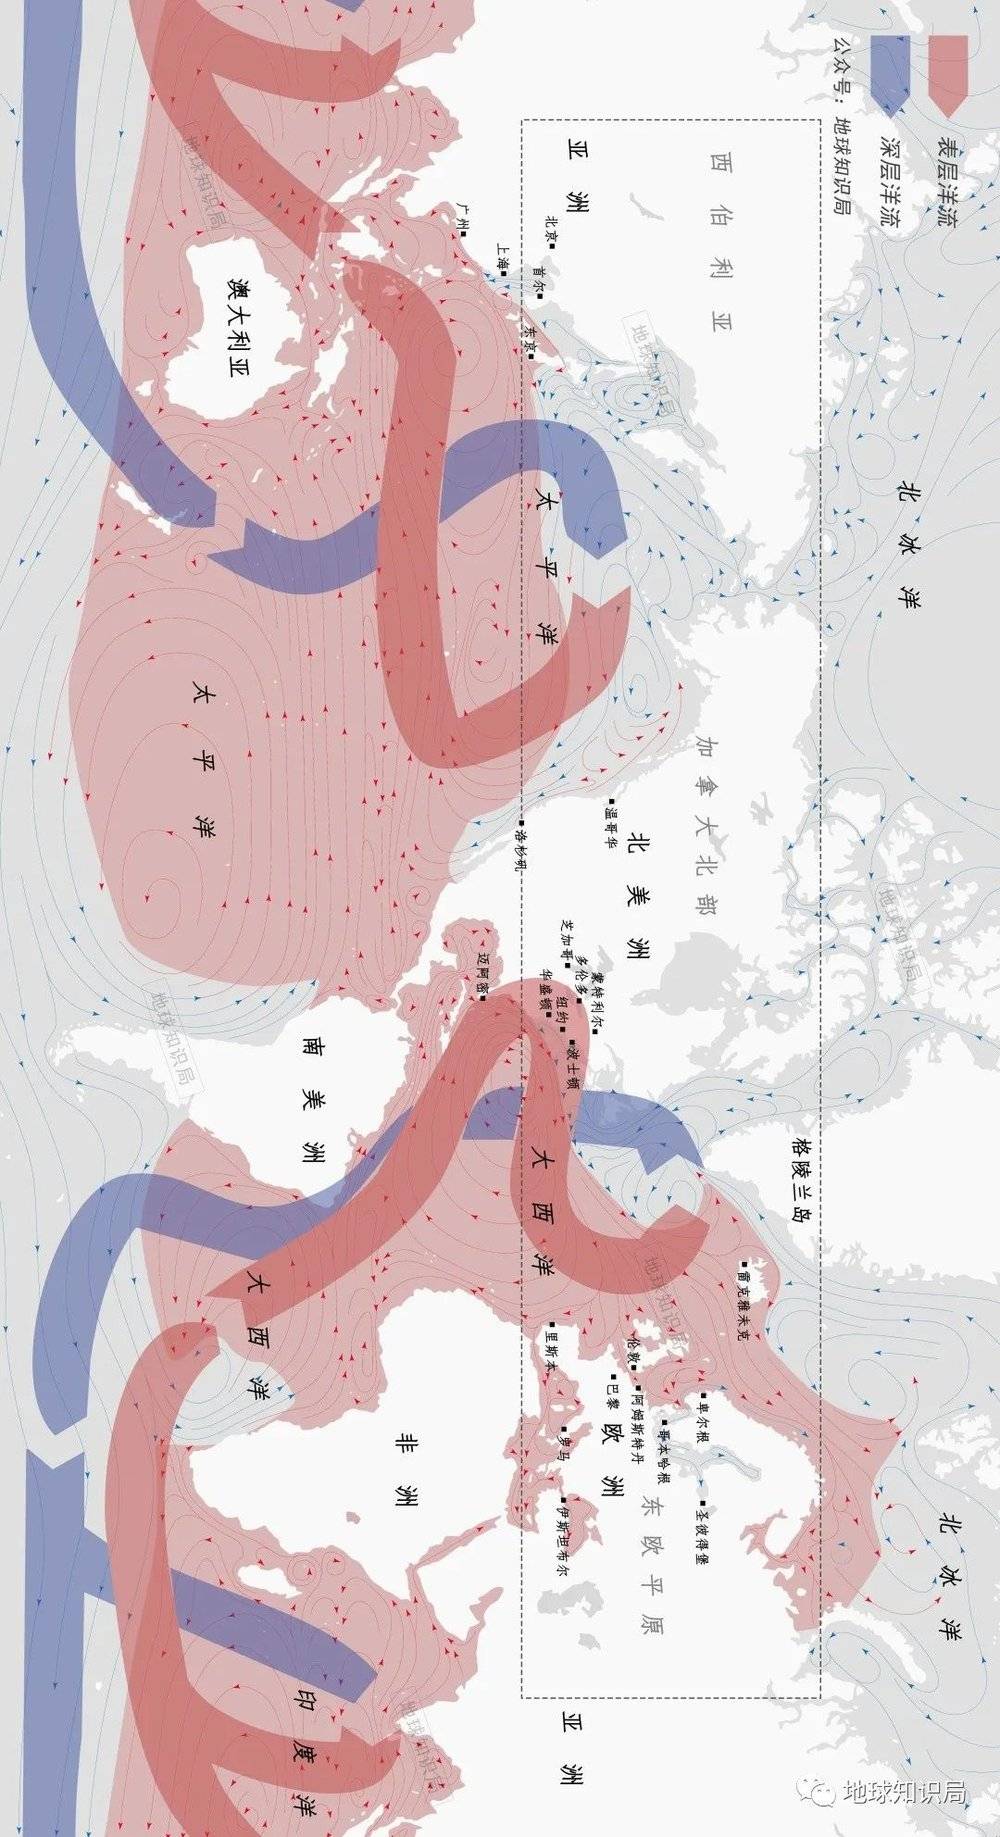 如果将地球海洋表层的暖流区域粗糙加以区分，会发现欧洲享受着多么巨大的热能福利，欧洲的纬度相比中国、美国都更高，而其主要城市相比同纬度的亚洲要温暖得多（横屏）